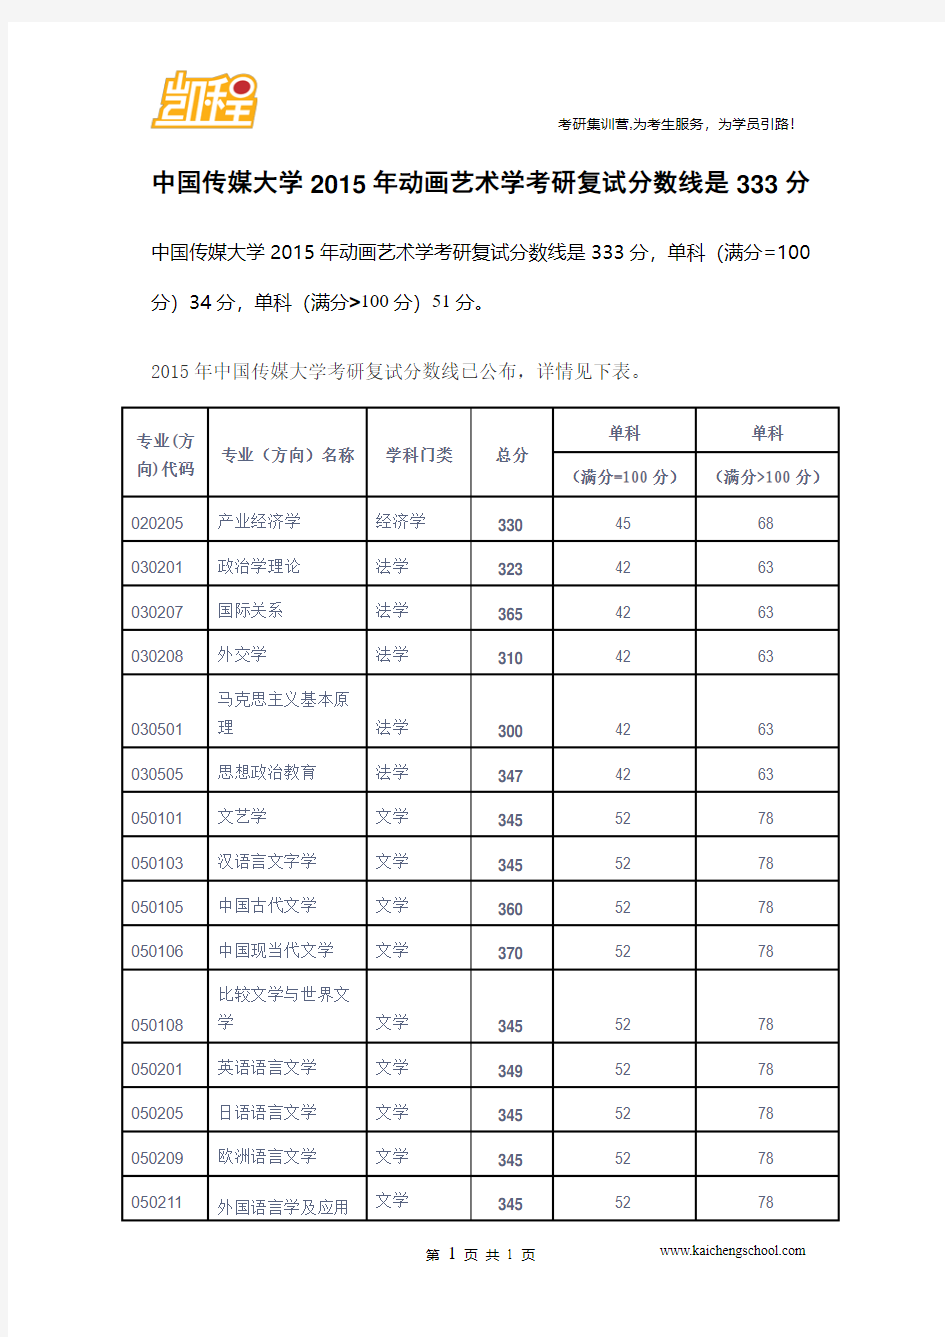 2015年中国传媒大学动画艺术考研复试分数线是333分